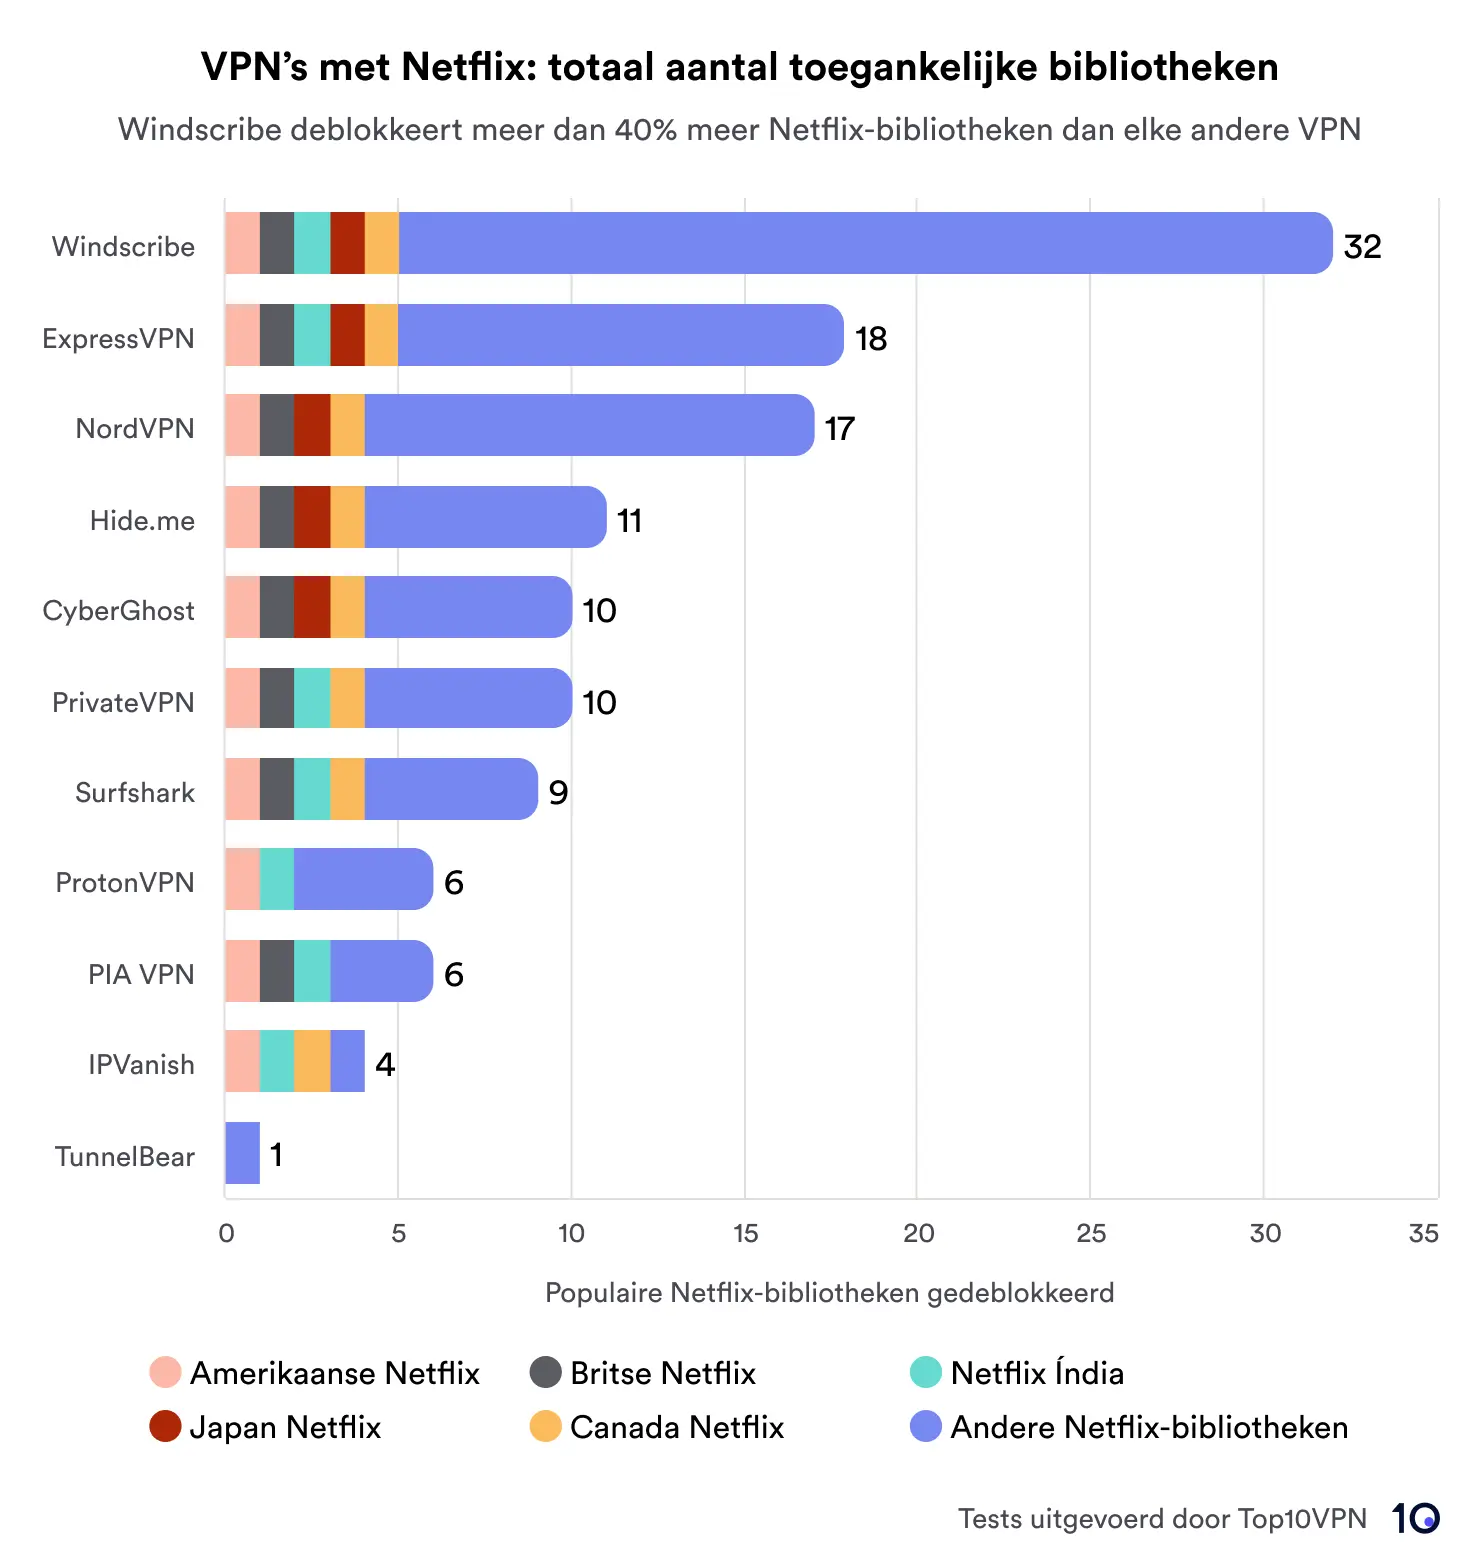 Staafdiagram waarin VPN-services worden vergeleken op basis van het totale aantal geopende Netflix-bibliotheken. Windscribe leidt met 32 ​​bibliotheken, gevolgd door ExpressVPN en NordVPN met respectievelijk 18 en 17. De grafiek bevat een sleutel die regio's aangeeft zoals de VS, het VK, Japan, Canada, India en andere.